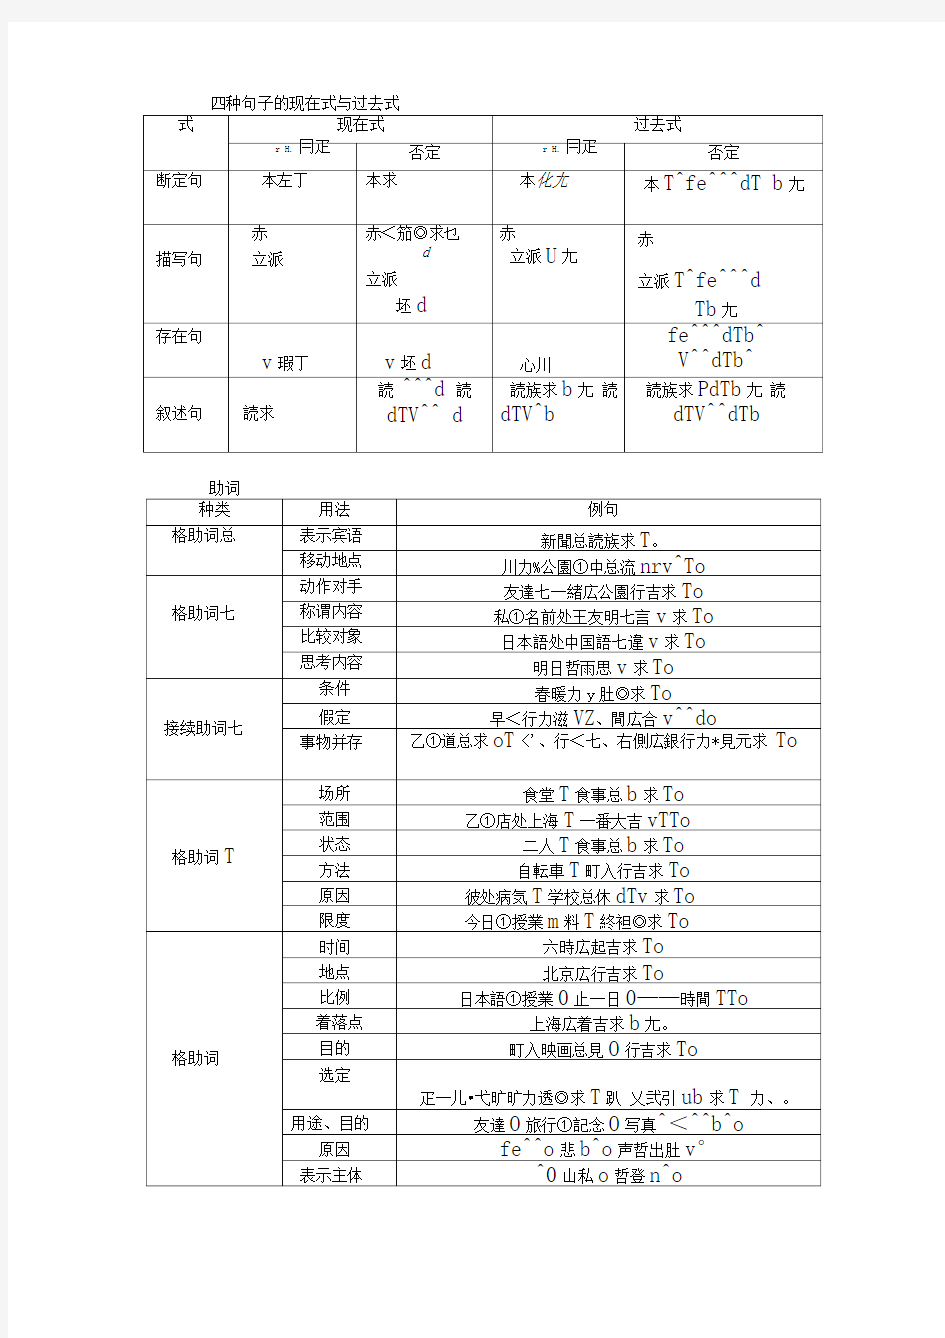 新编日语(修订版)第一册、第二册重要语法知识点总结